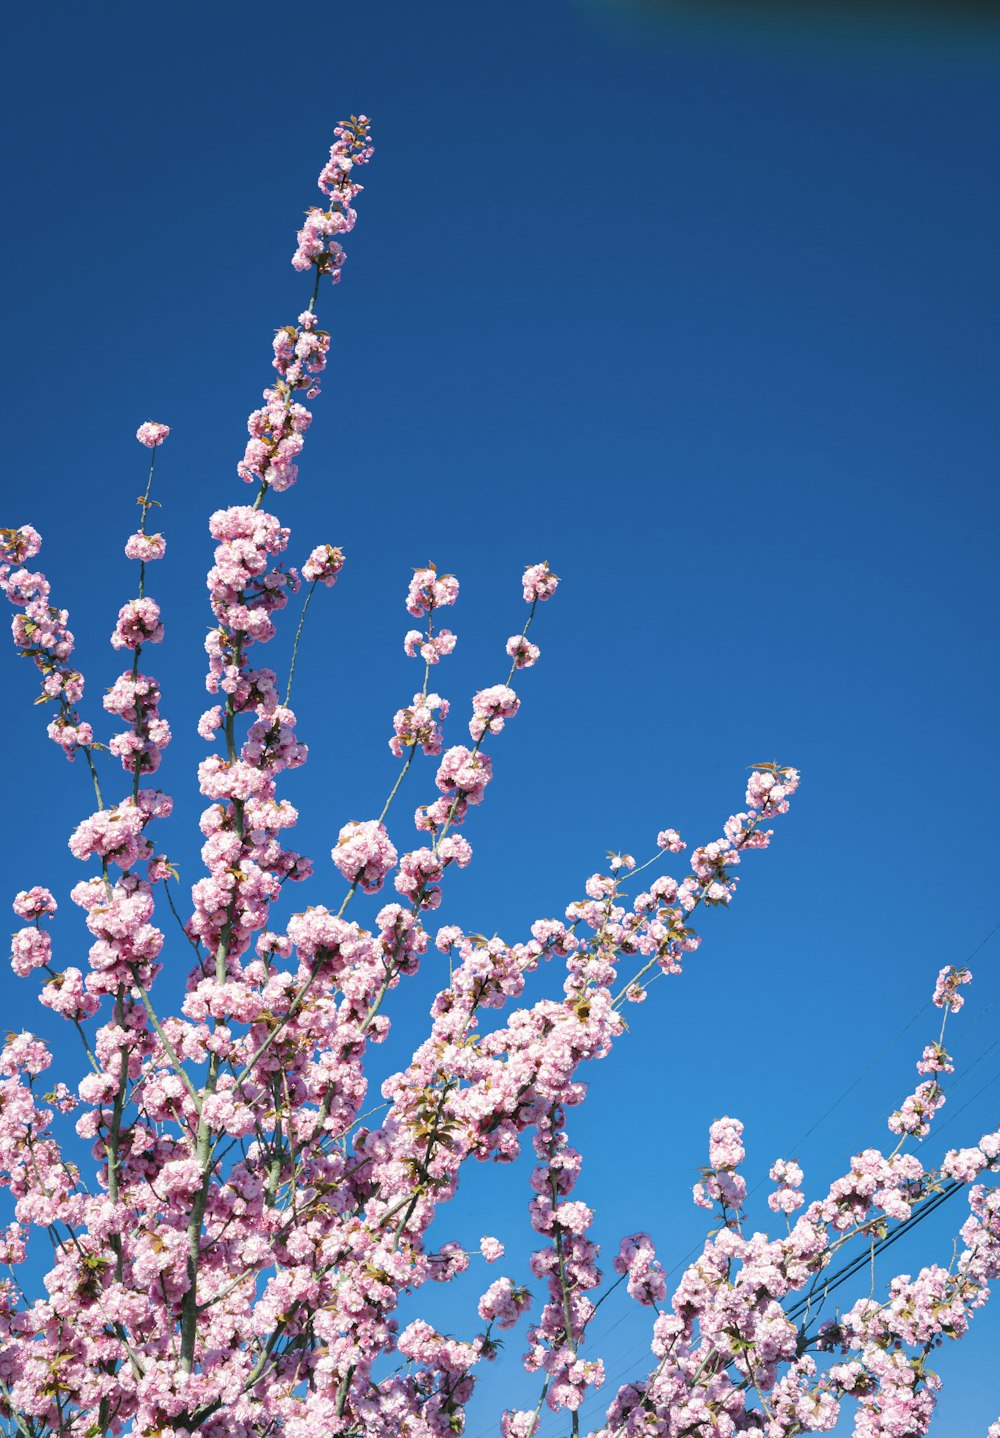 fiore bianco e rosa sotto il cielo blu durante il giorno